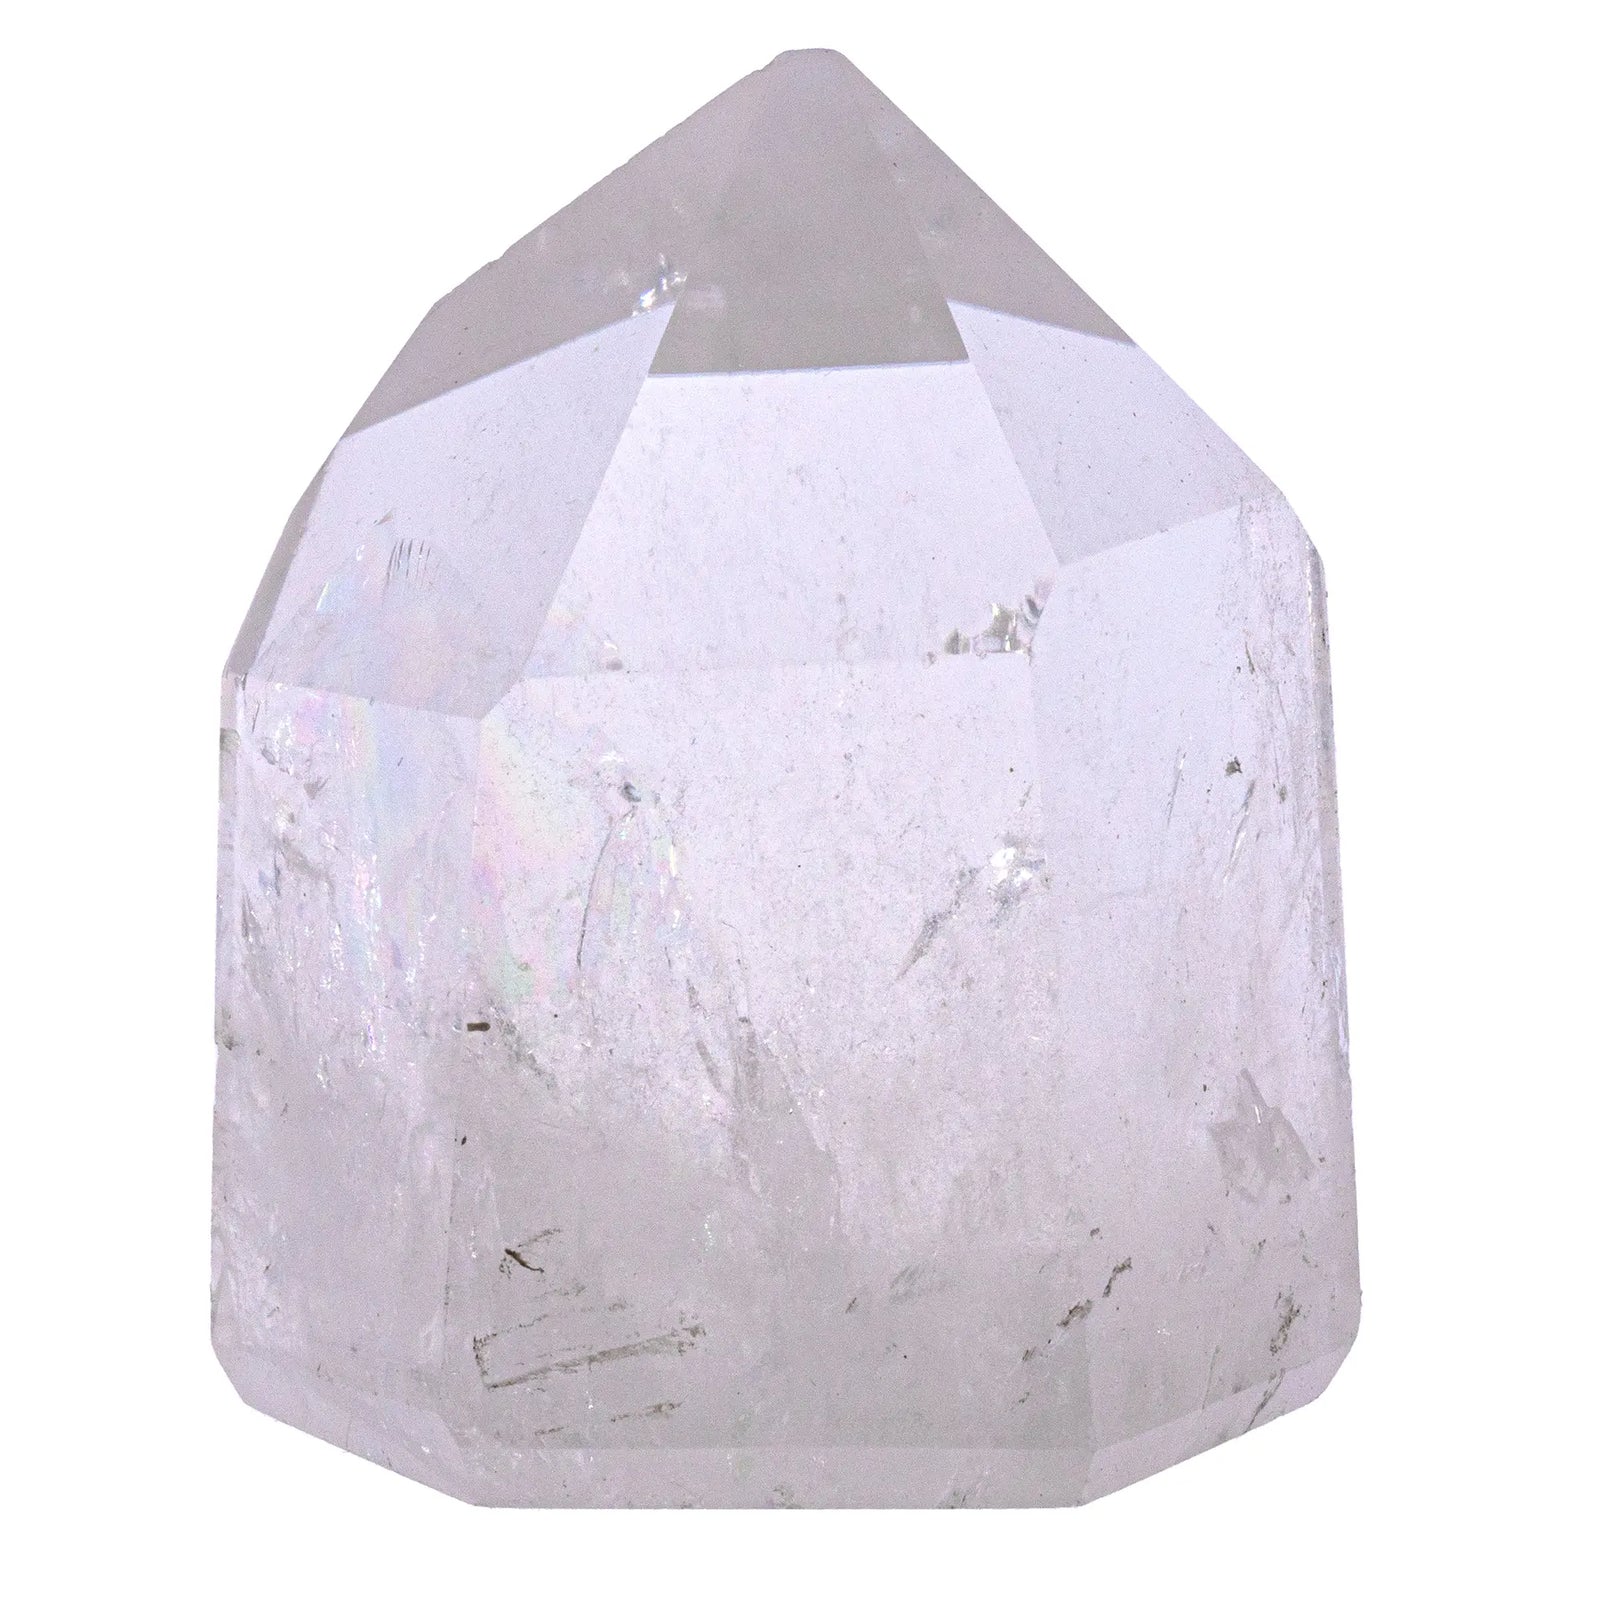 Cristal de roche - cristal poli   - CRISTAL SOURCES